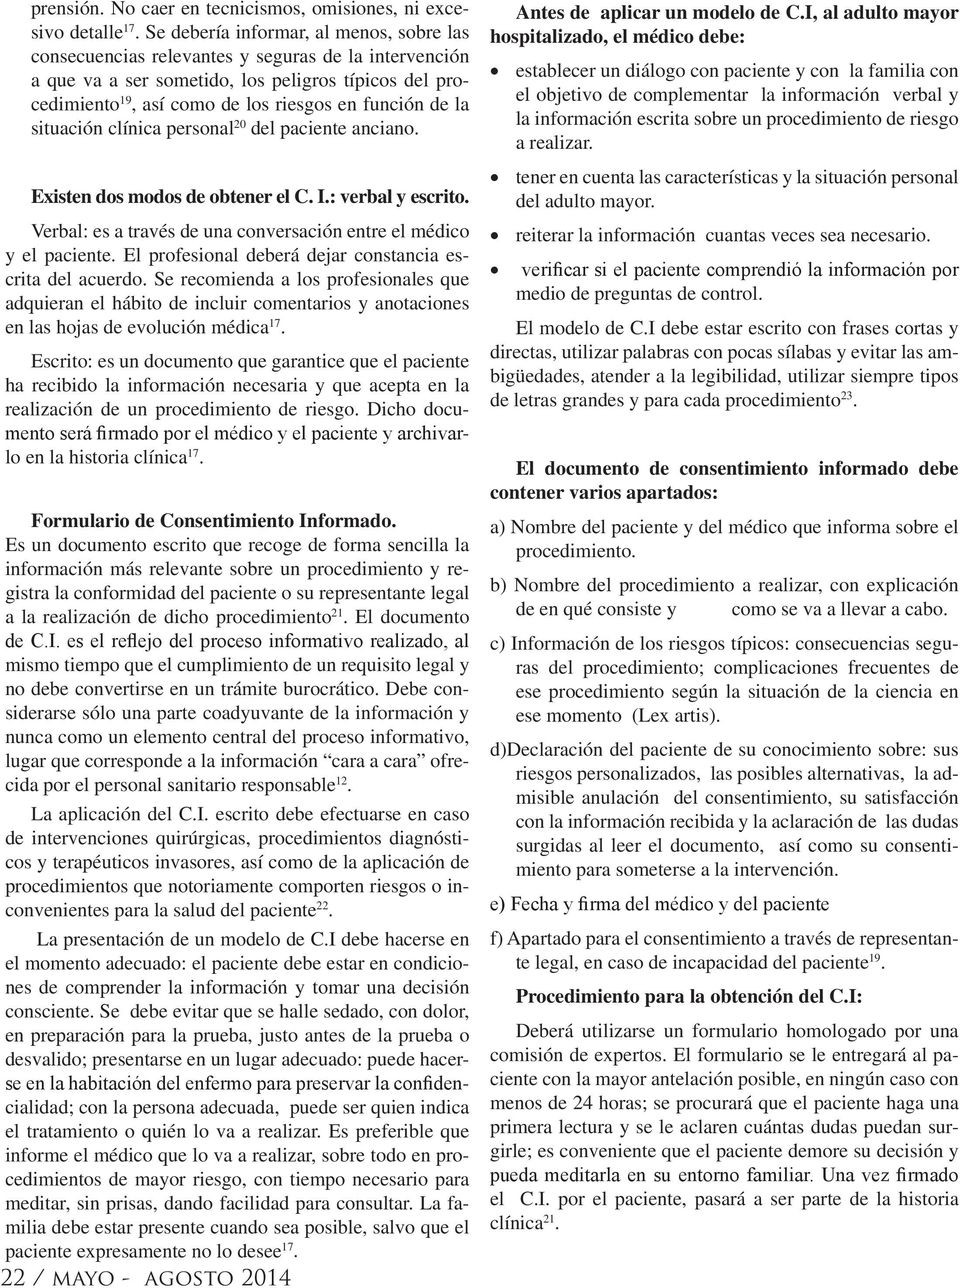 PROPUESTA DE UN MODELO DE CONSENTIMIENTO INFORMADO PARA EL ADULTO MAYOR  HOSPITALIZADO. - PDF Free Download